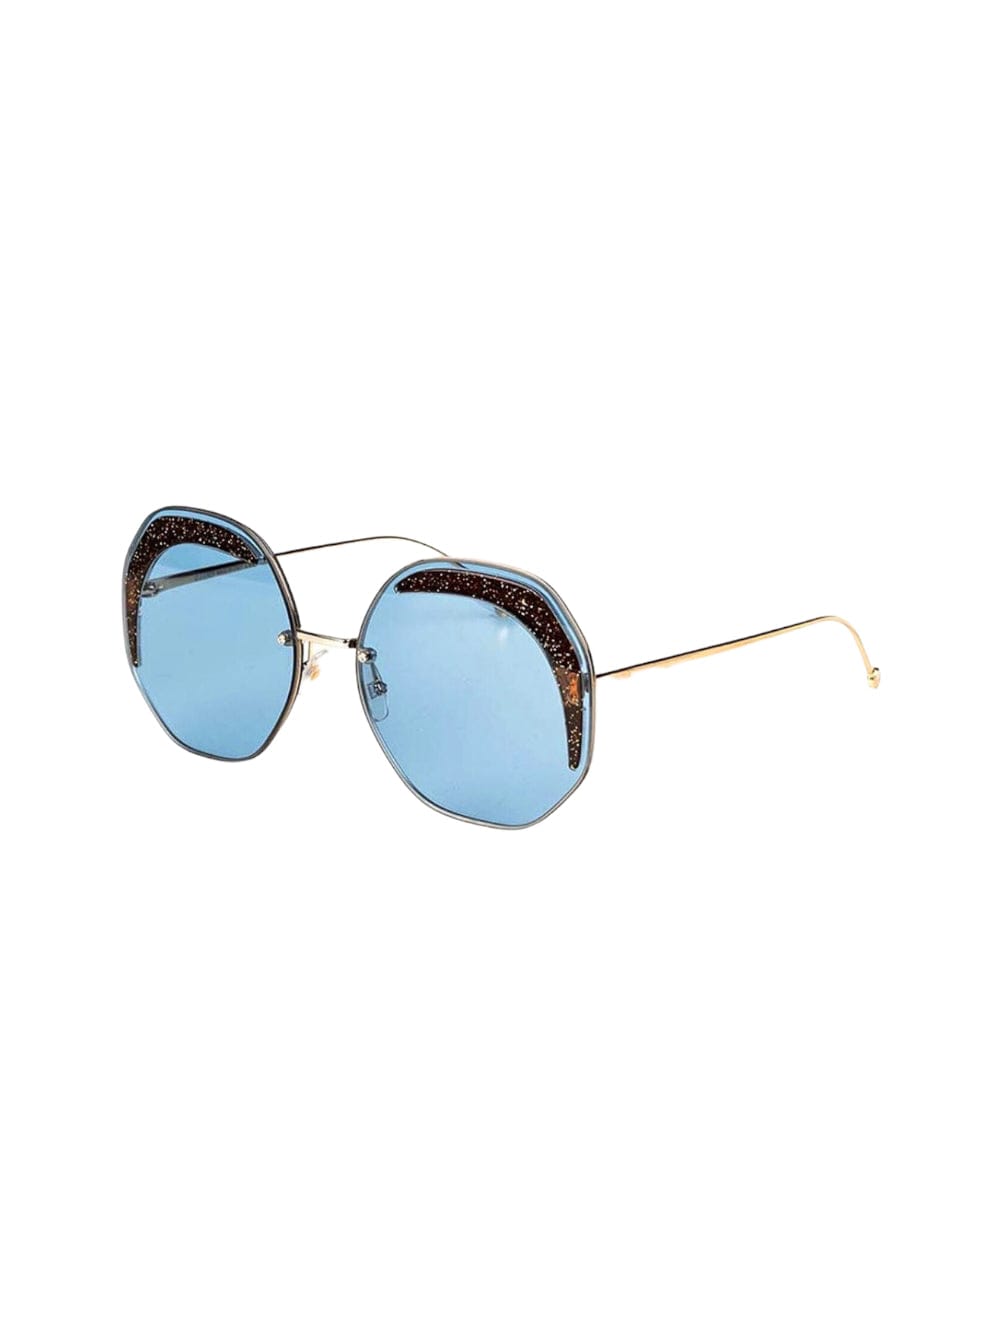 Fendi Ff 0358 - Gold Sunglasses